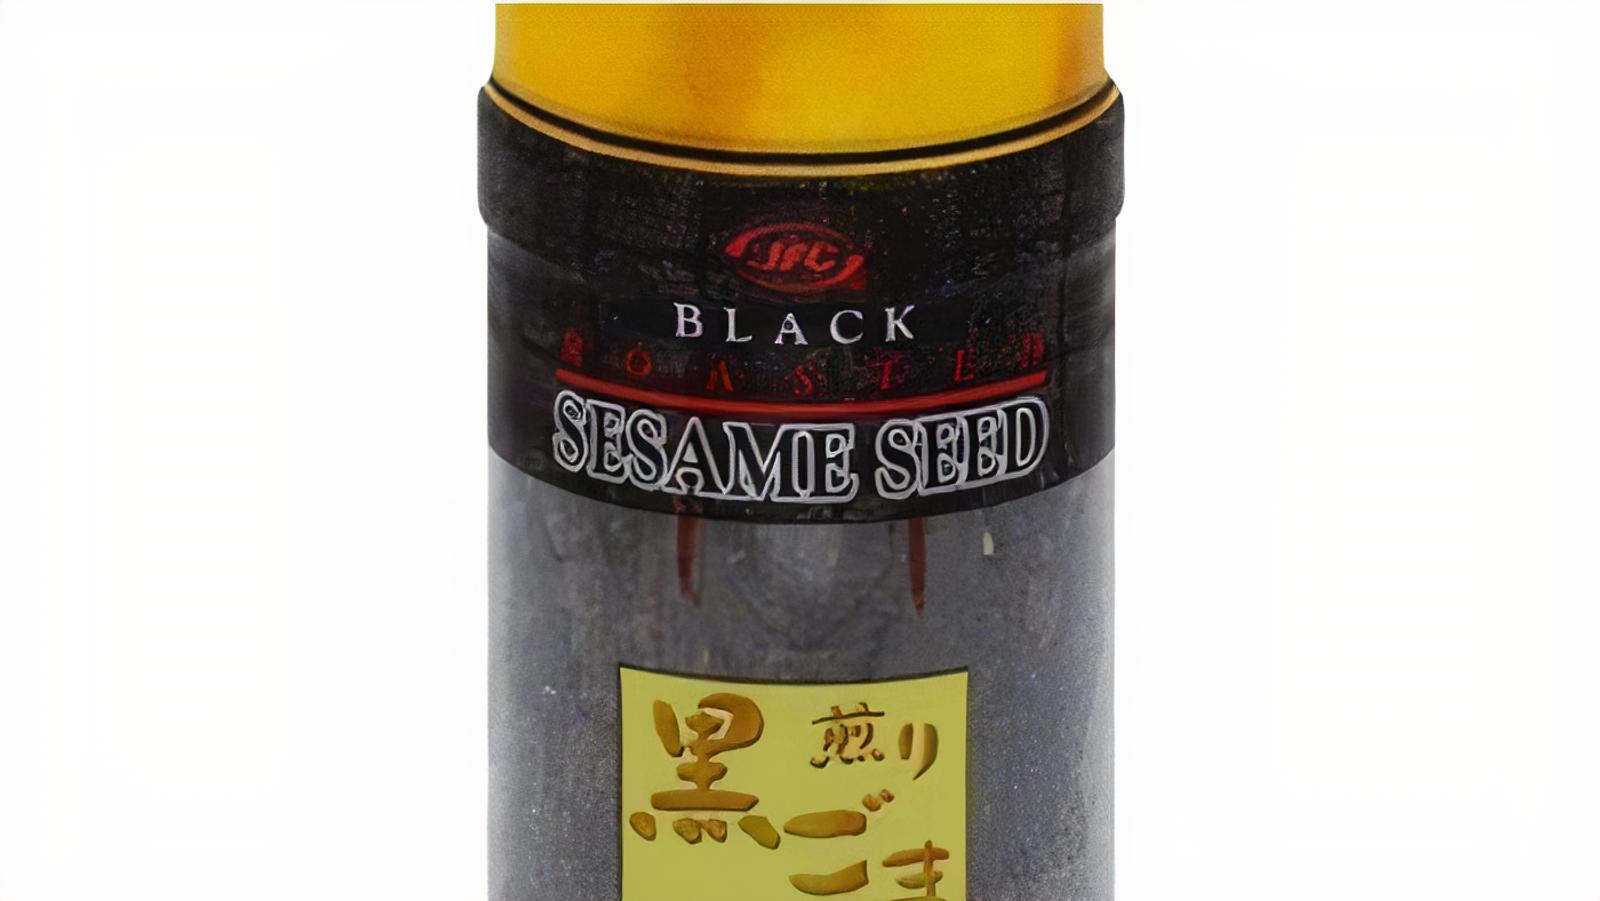 Sesame Seed, Roasted, Black (3.5oz)